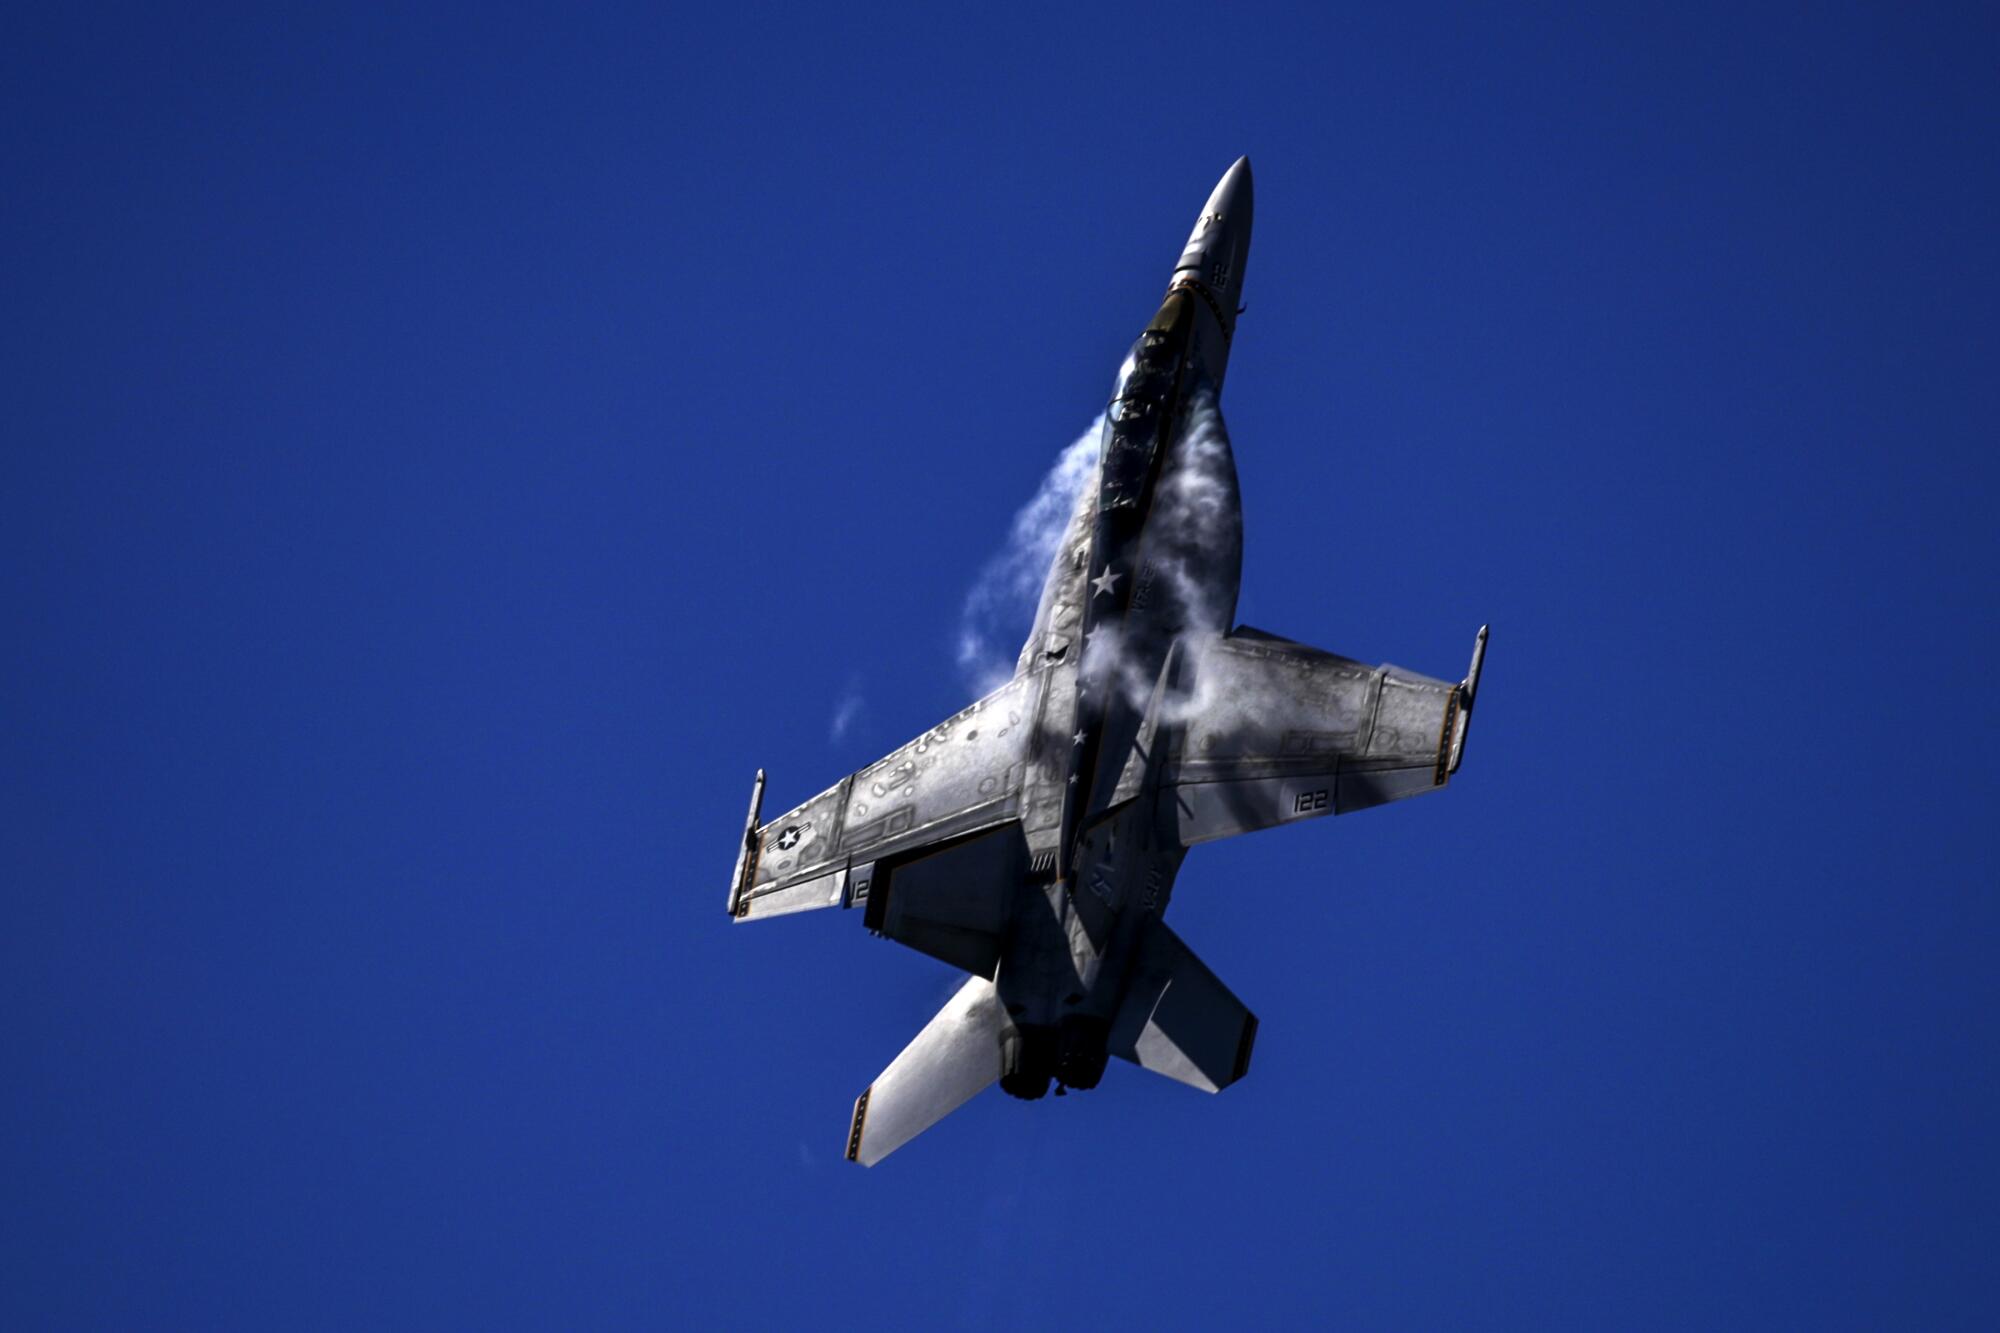  U.S. Navy F/A-18 Super Hornet on a vertical climb  